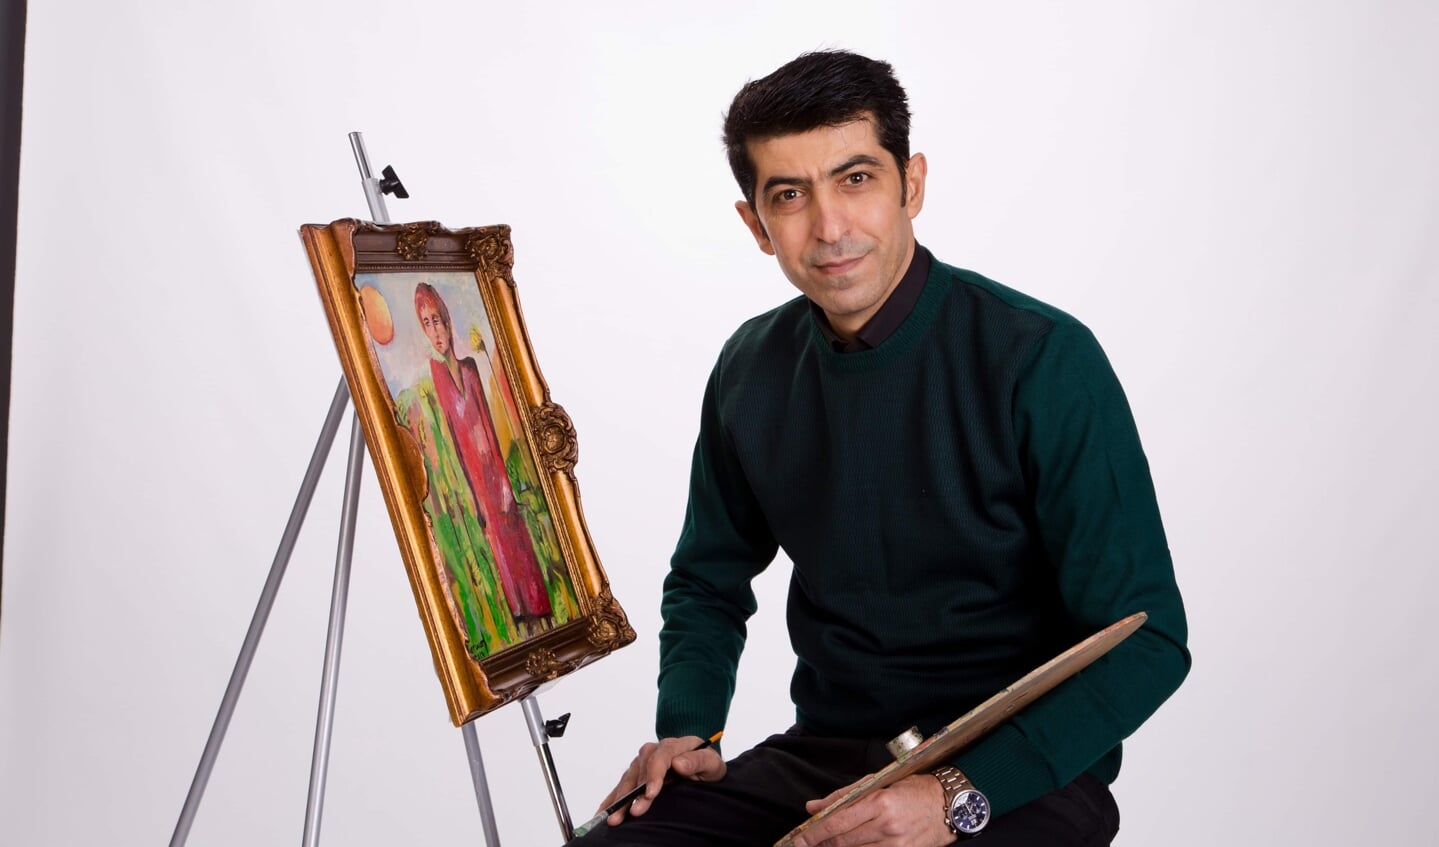 Sherwan Ismail geeft zijn kunstwerken geen namen, om de fantasie van de bezoeker te stimuleren.